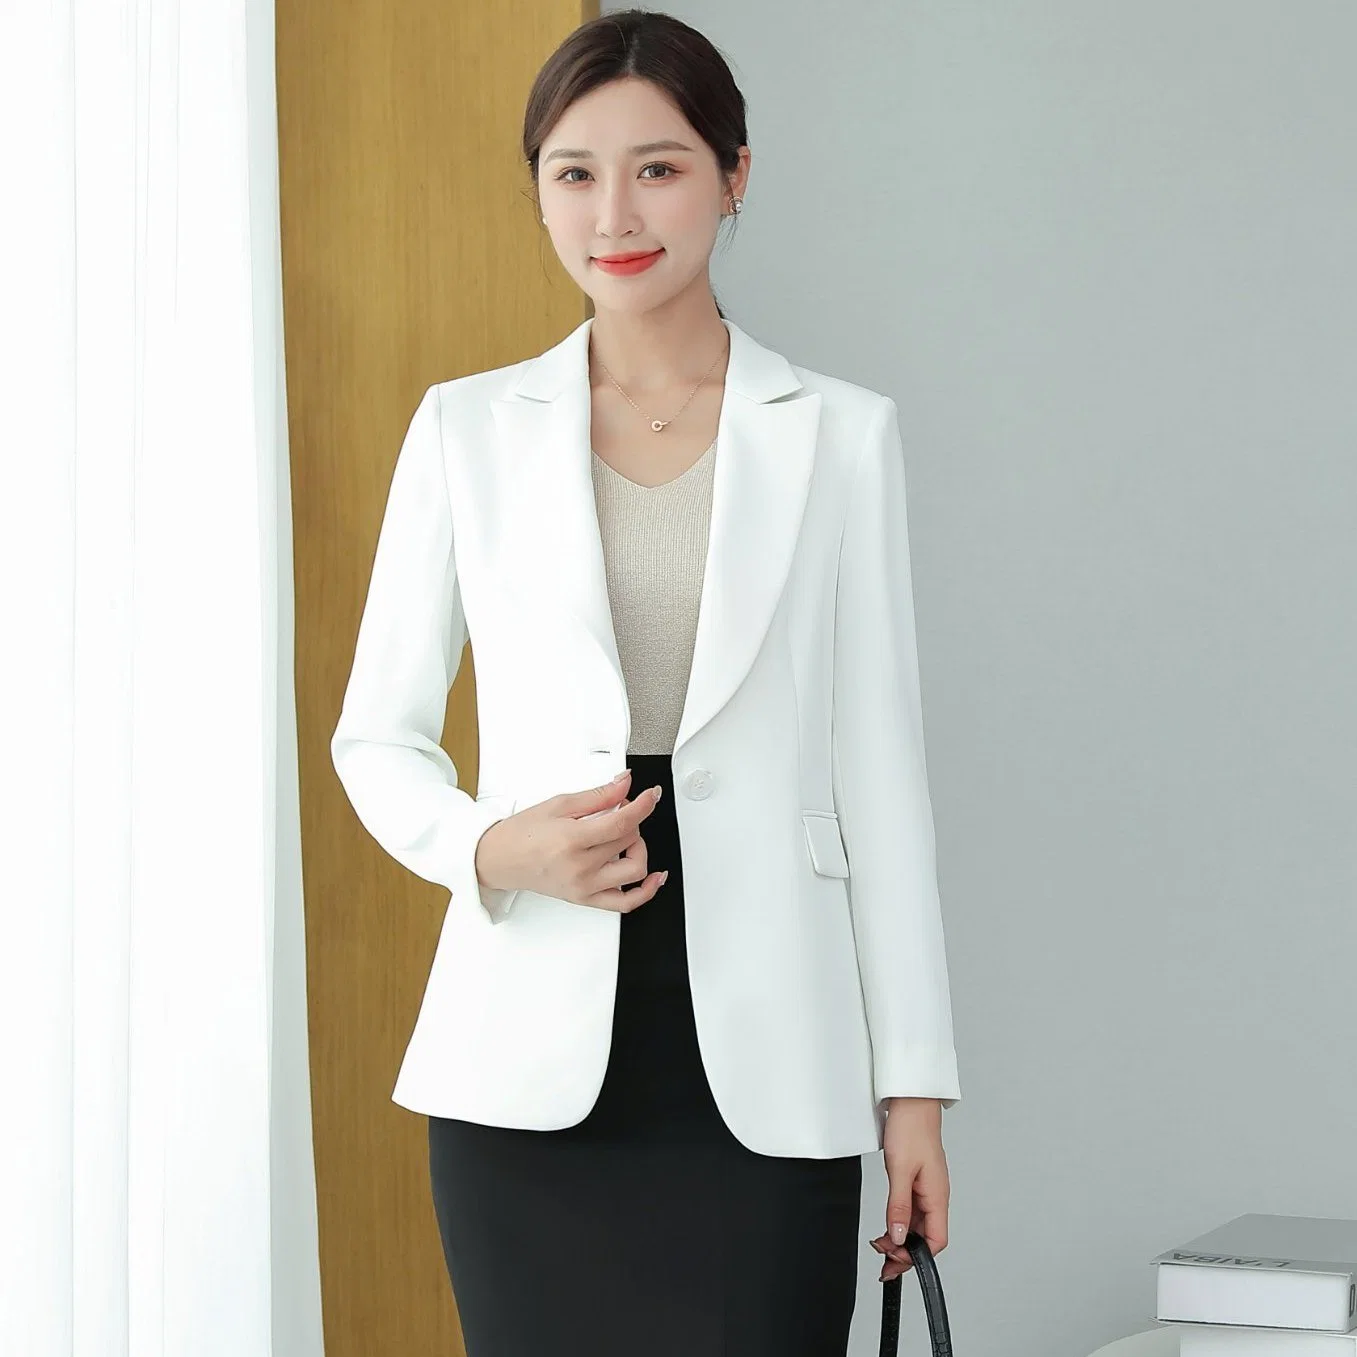 Ladies Fashion Suit Business Suit White